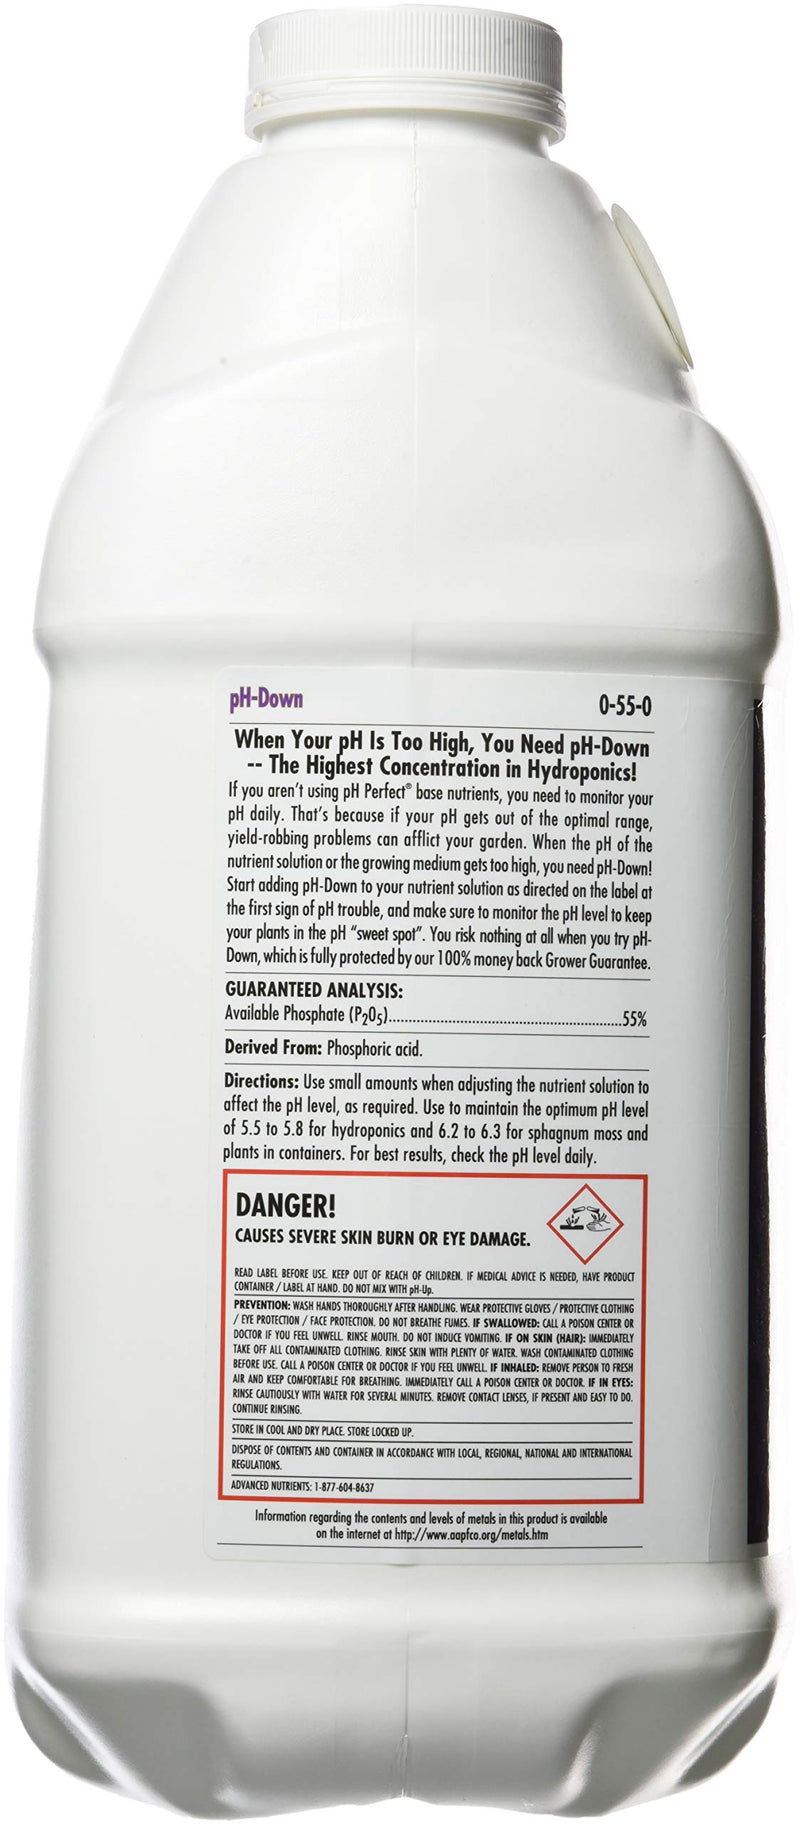 Advanced Nutrients 3800-16 pH, 10 Liter, Brown/A